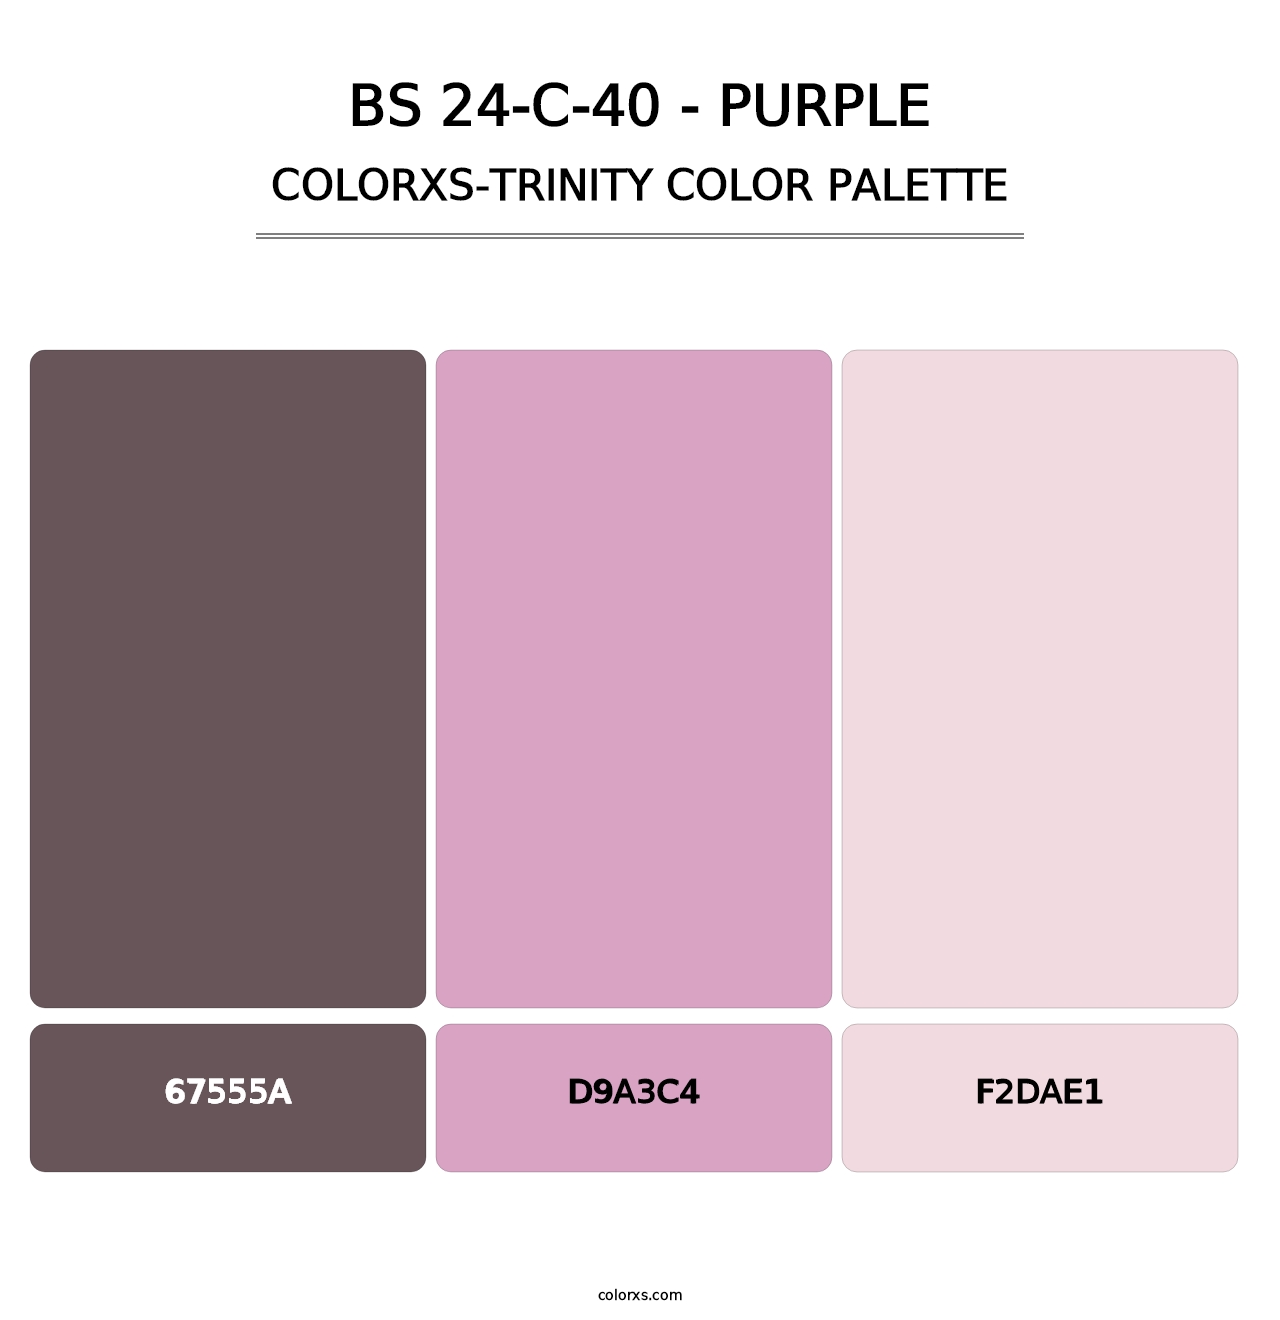 BS 24-C-40 - Purple - Colorxs Trinity Palette